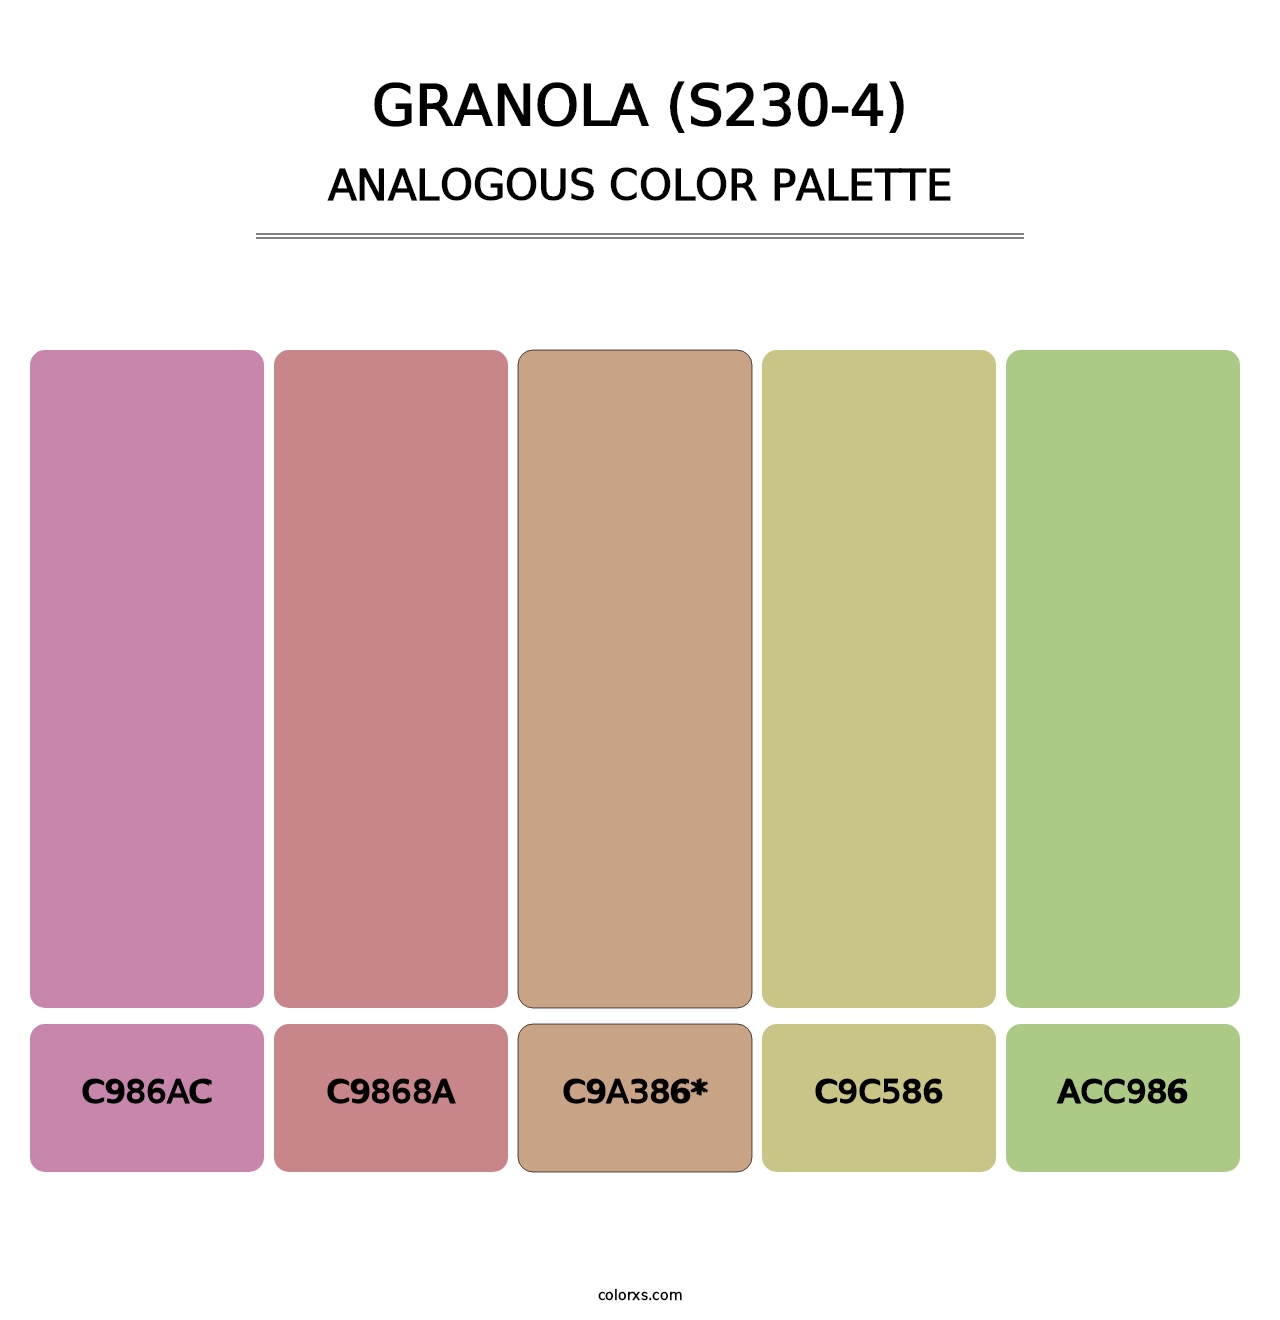 Granola (S230-4) - Analogous Color Palette